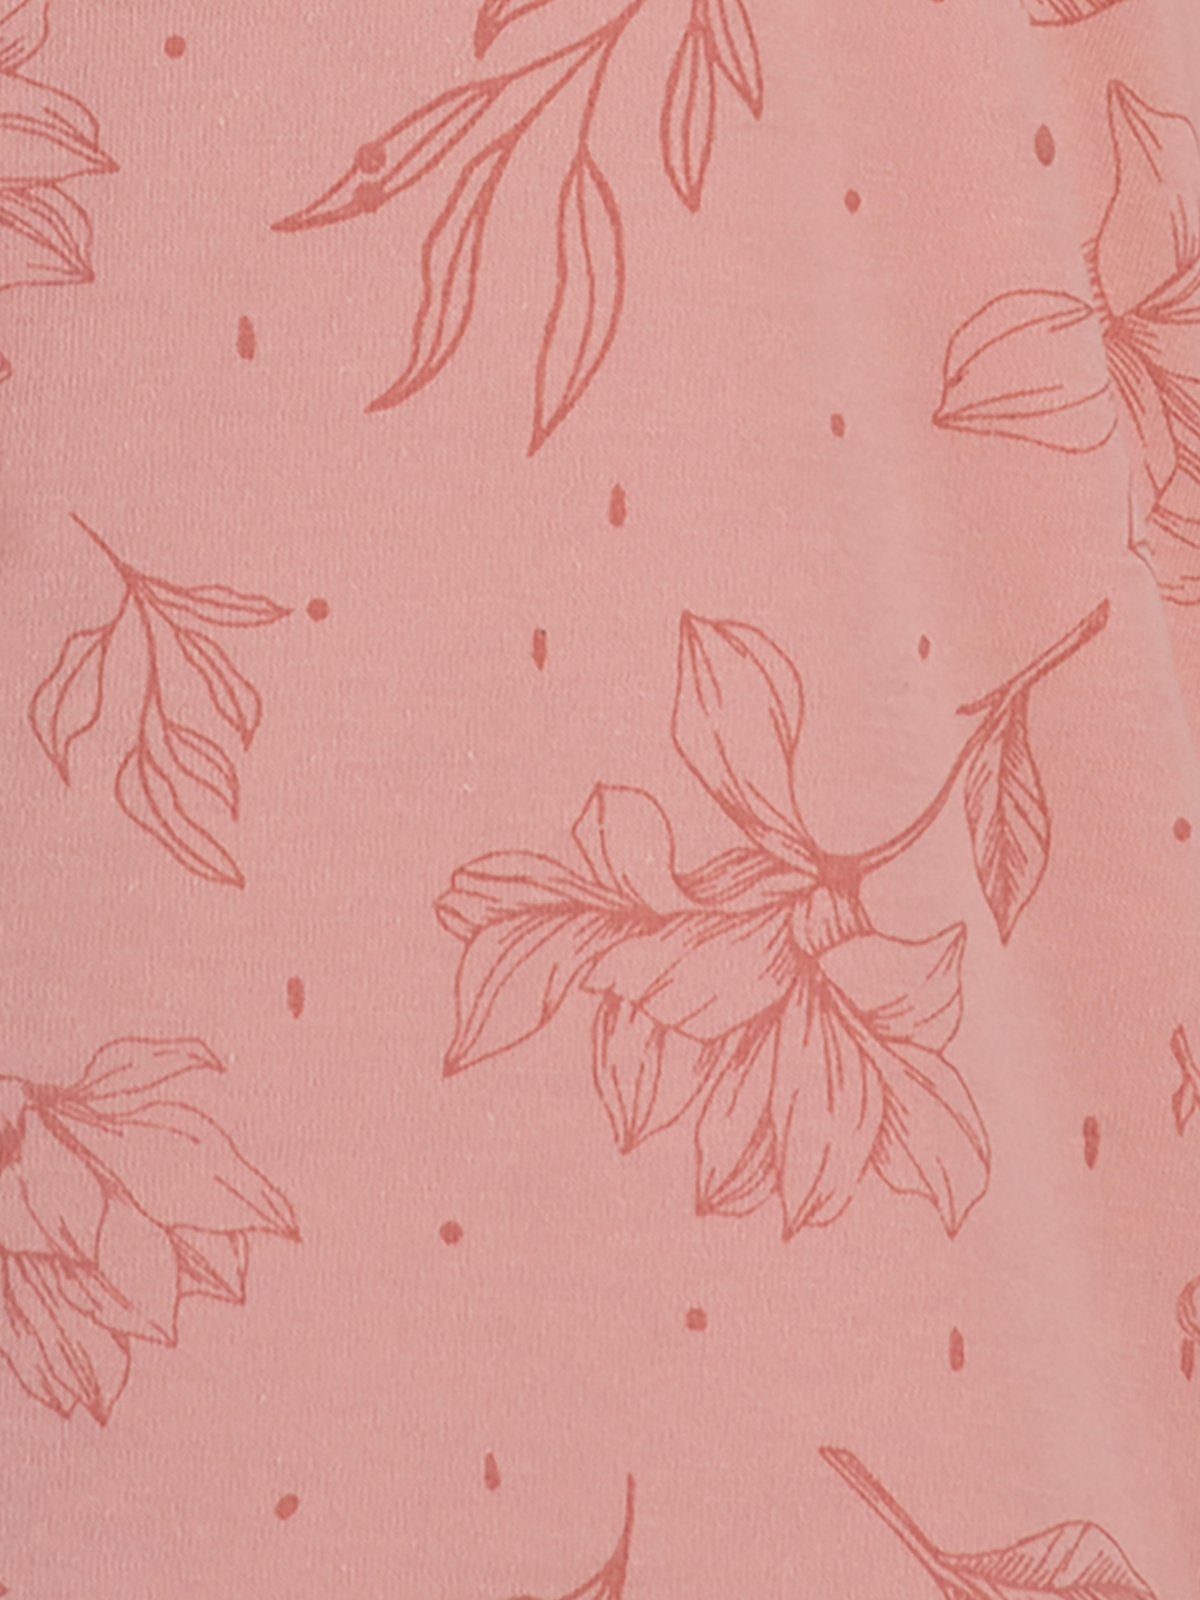 rosa Kurzarm Floral - Schlafanzug zeitlos Pyjama Set